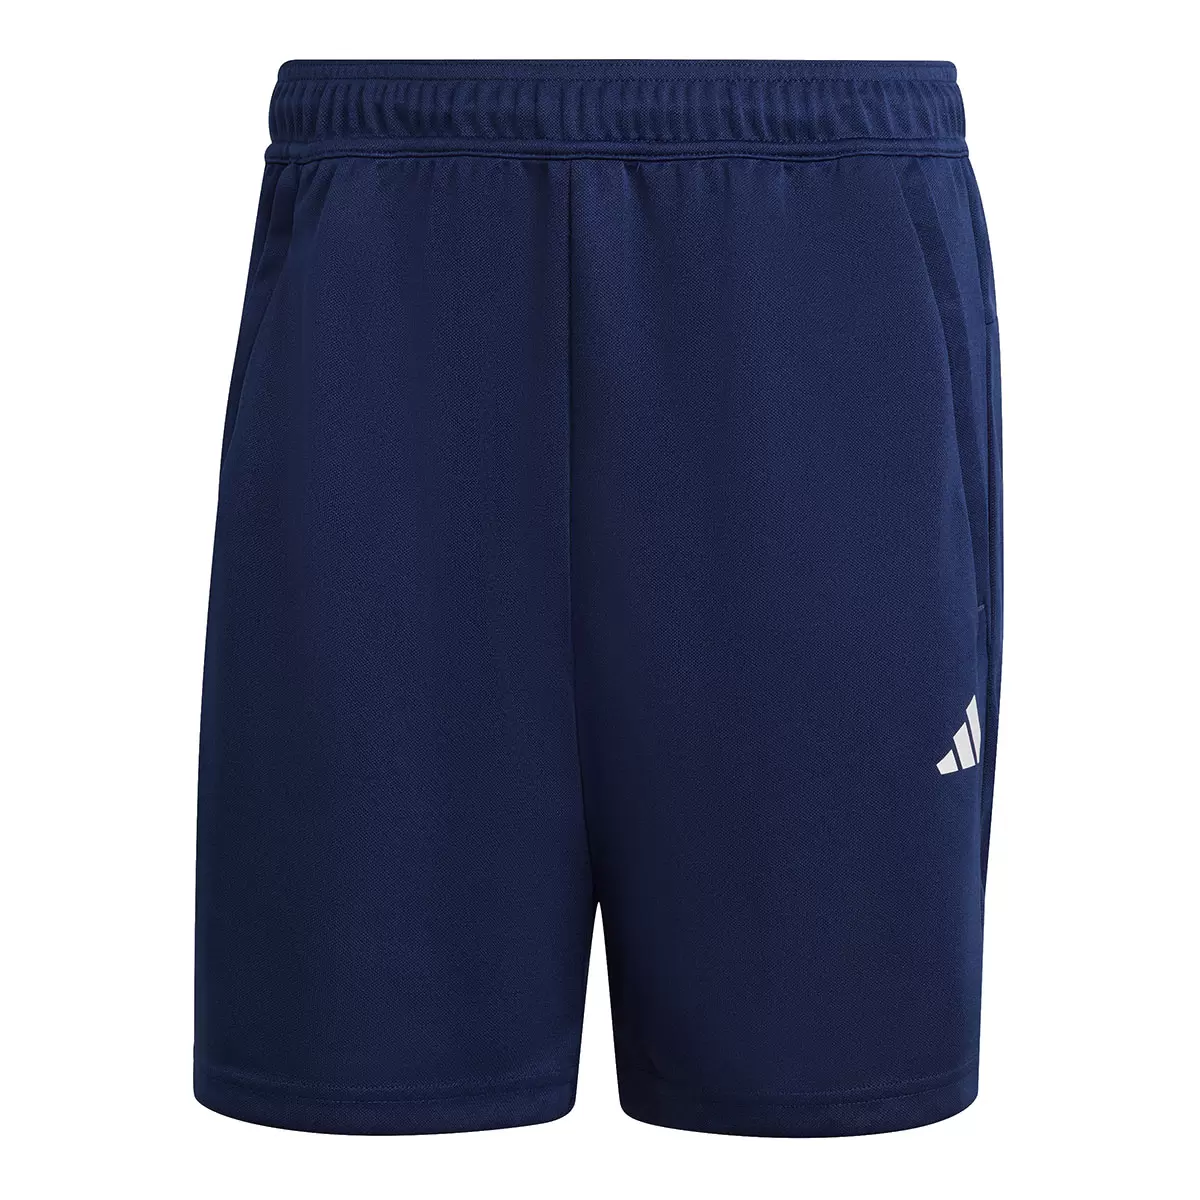 Adidas 男運動短褲 深藍 S